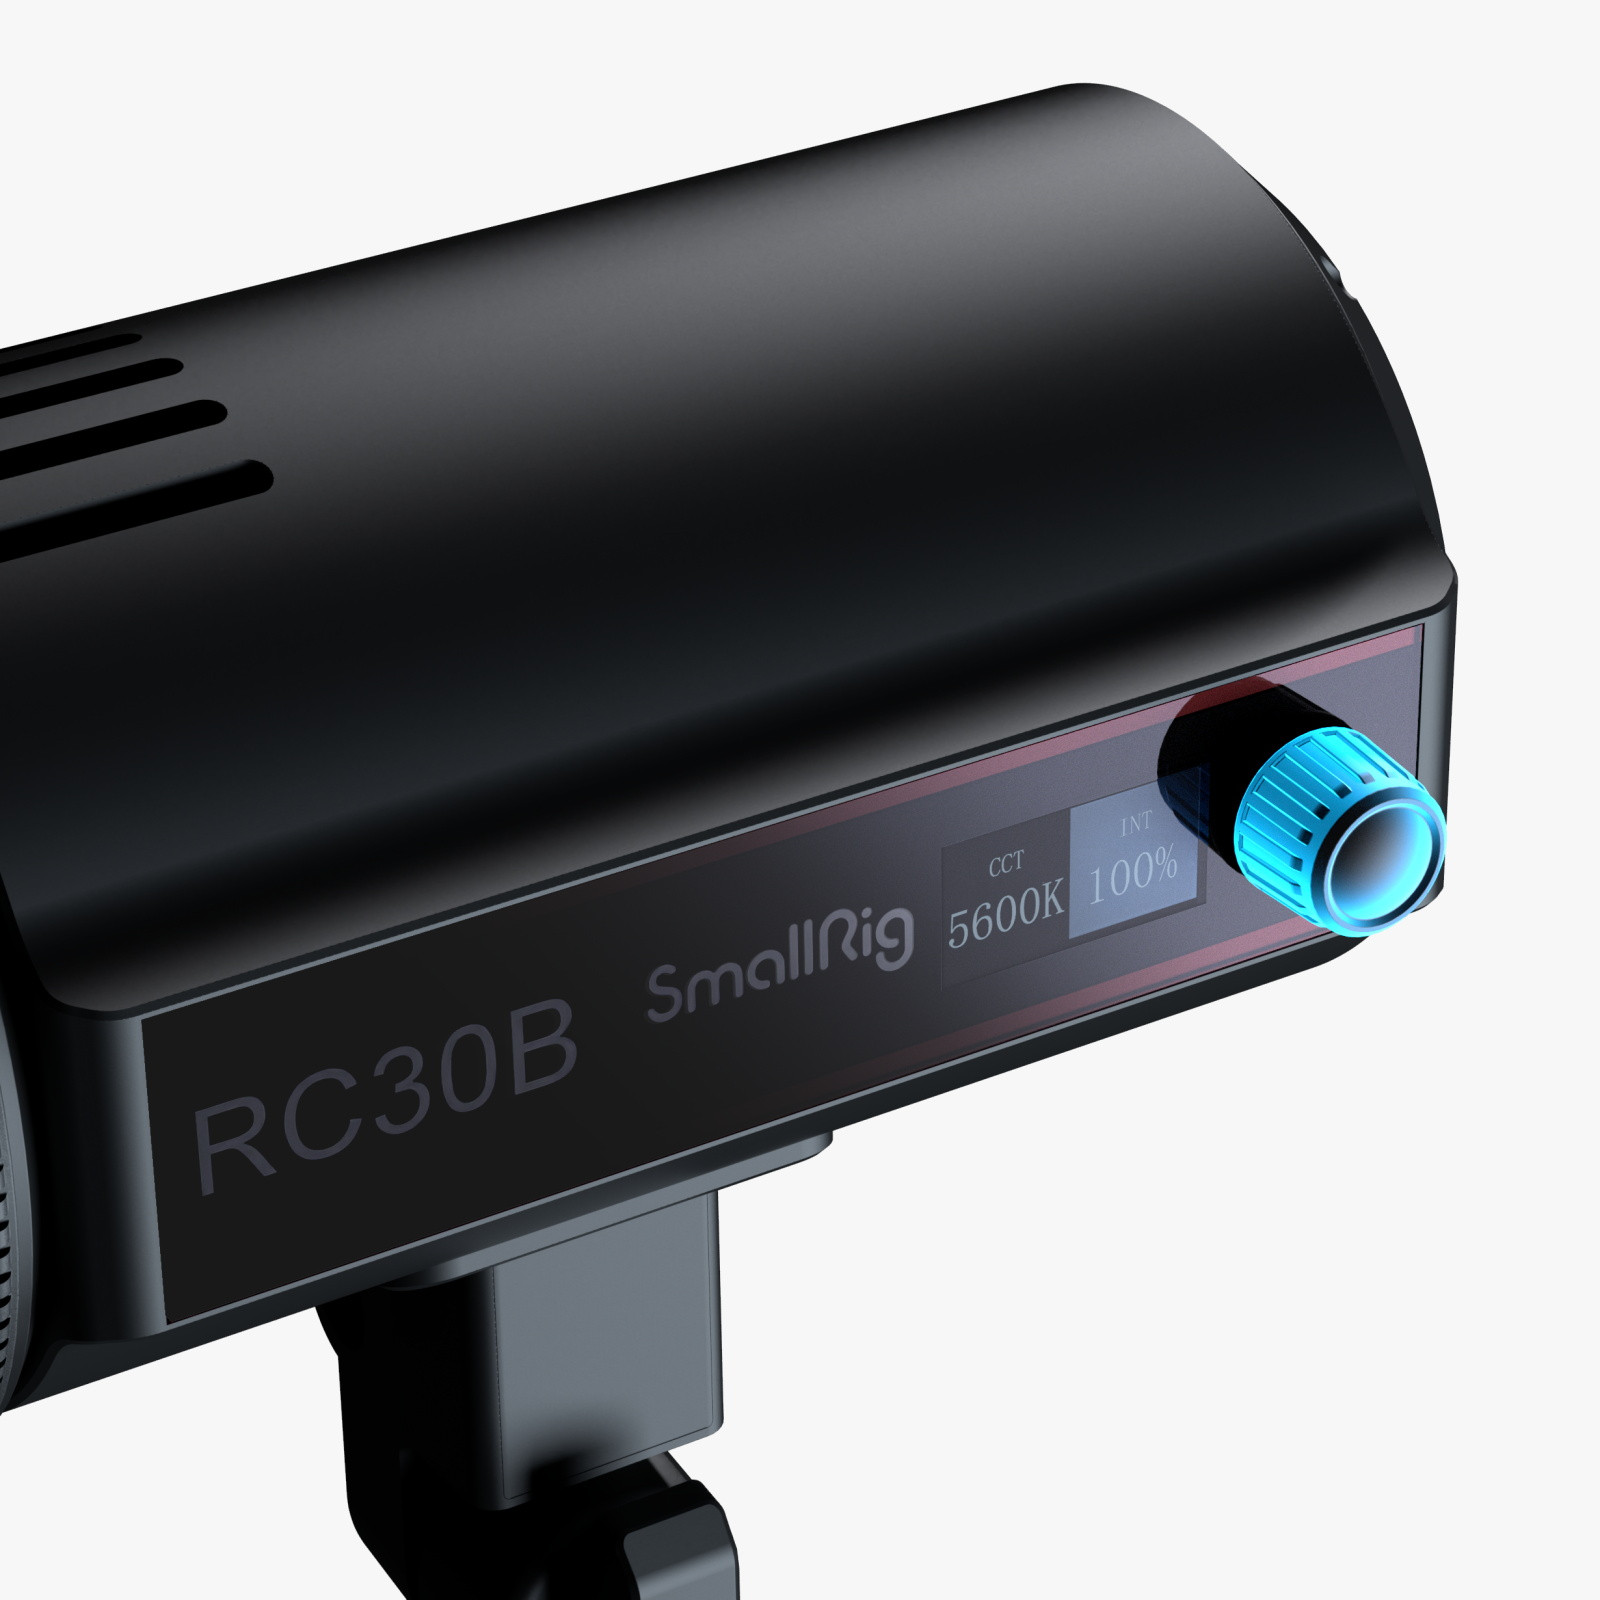 SmallRig RC 30B COB LED Video Light (UK) 4281